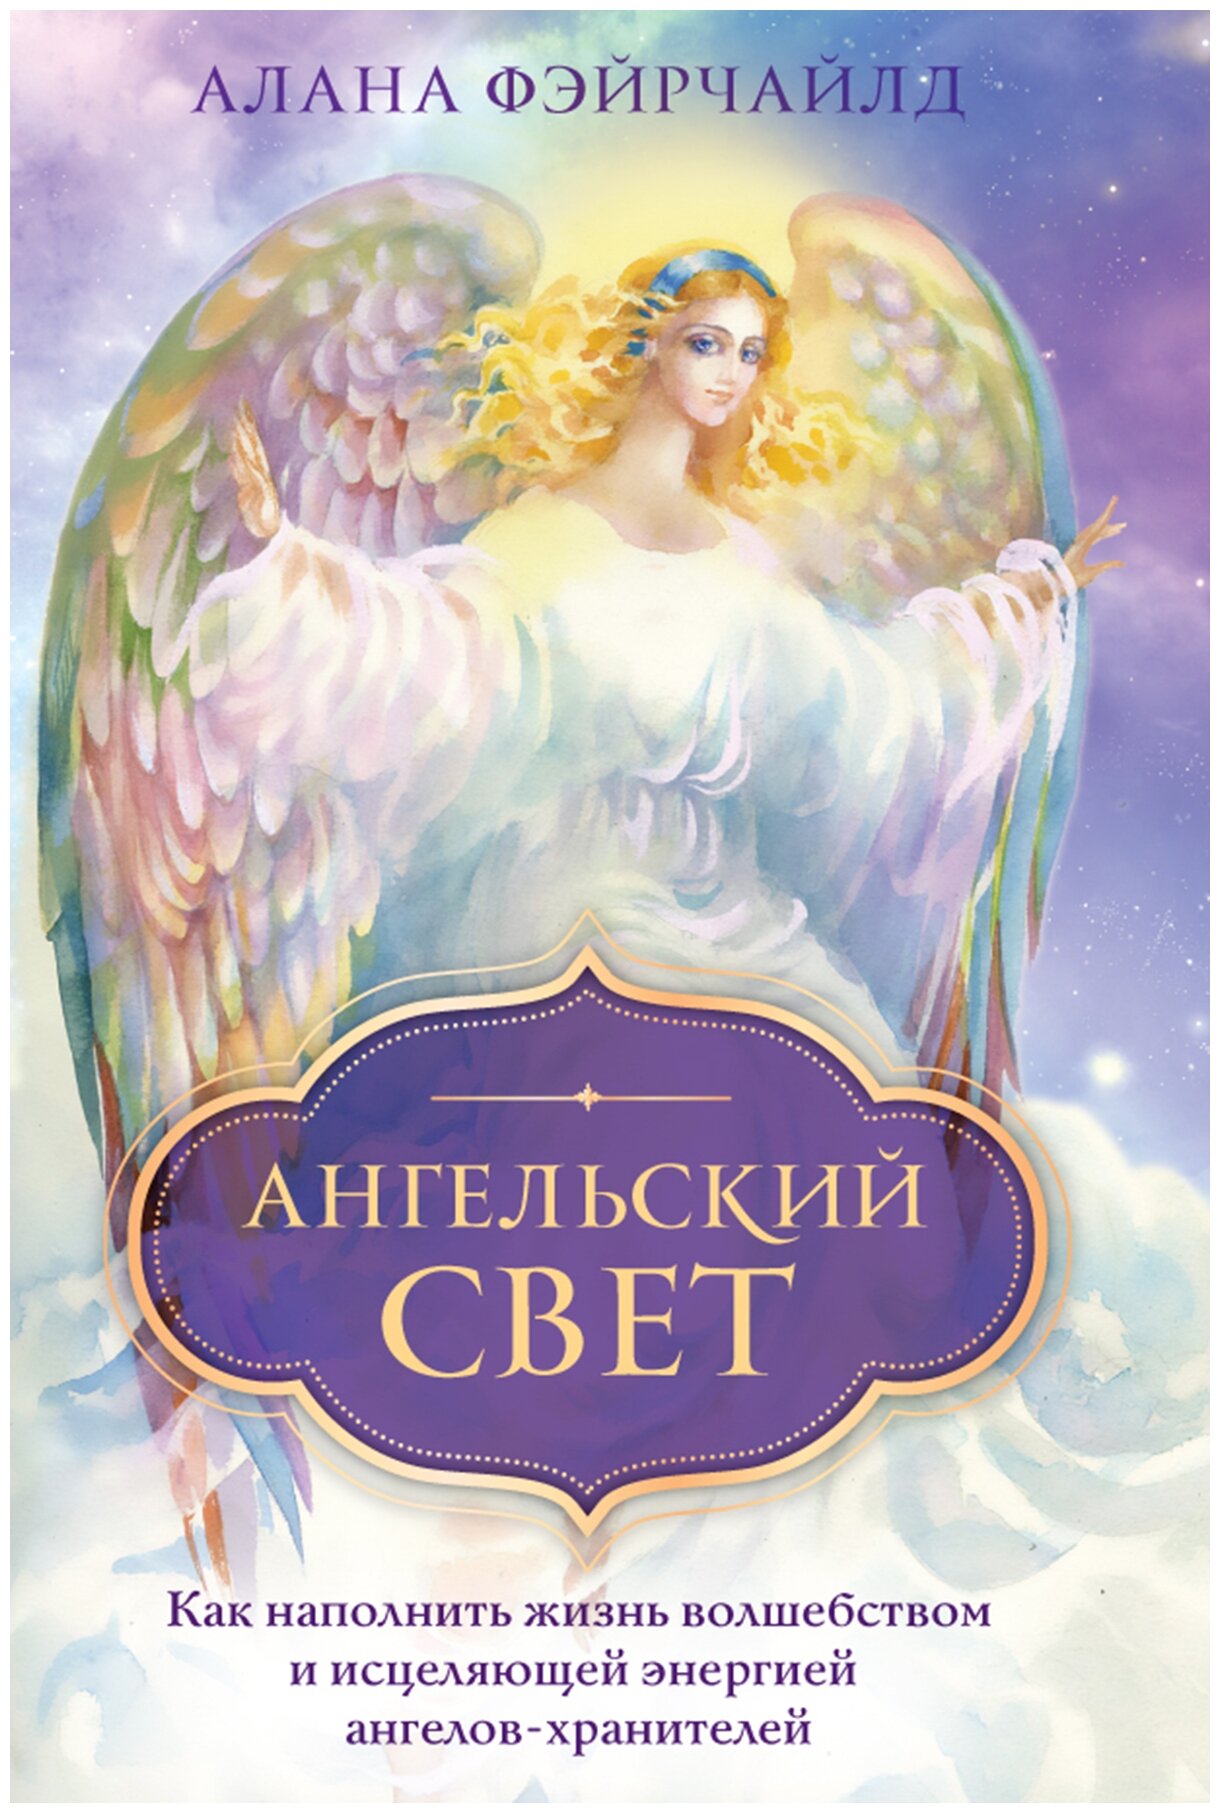 Фэйрчайлд А. "Ангельский свет. Как наполнить жизнь волшебством и исцеляющей энергией ангелов-хранителей"